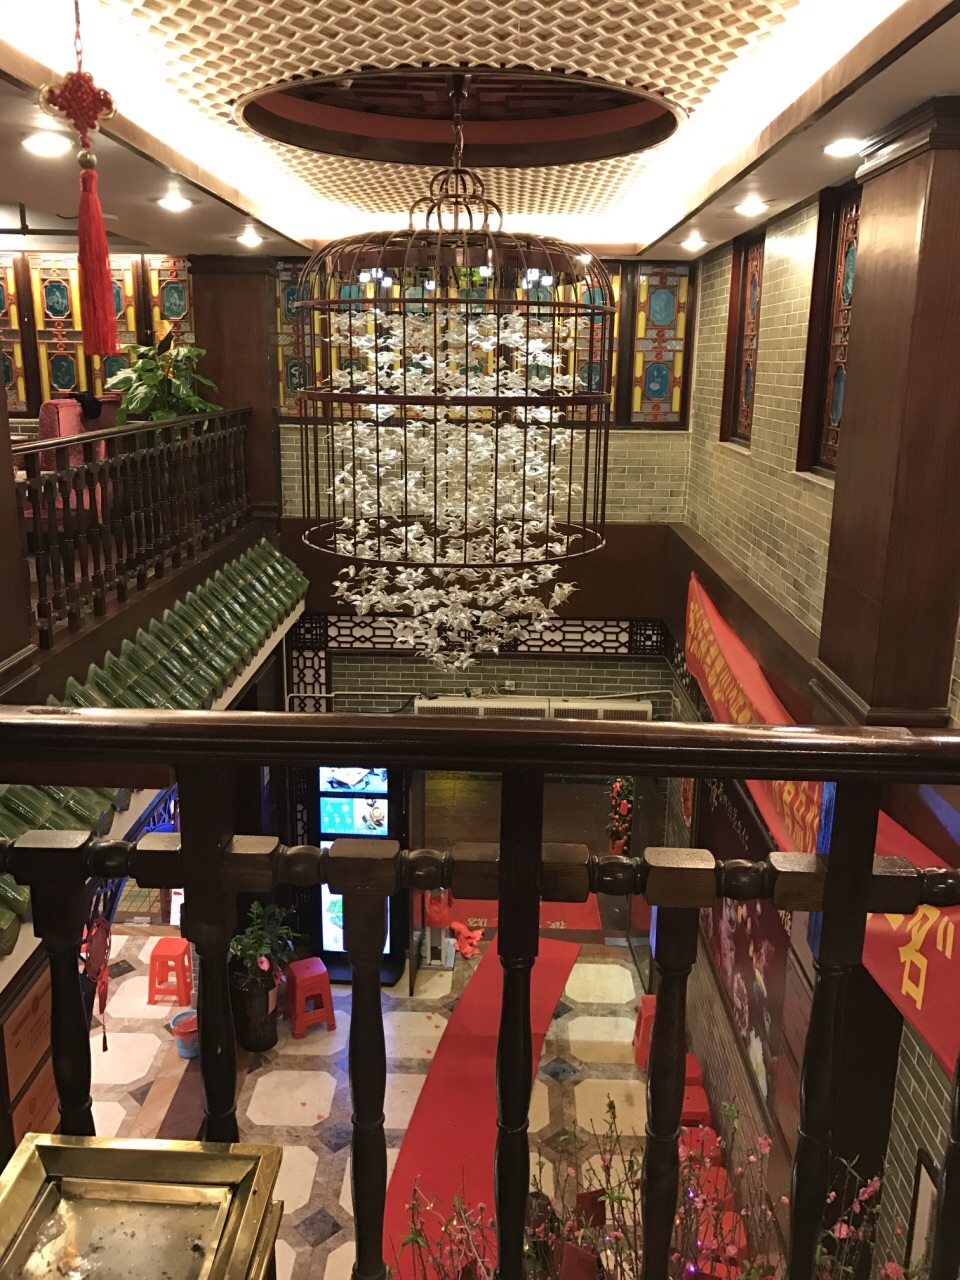 上海点都德茶餐厅图片